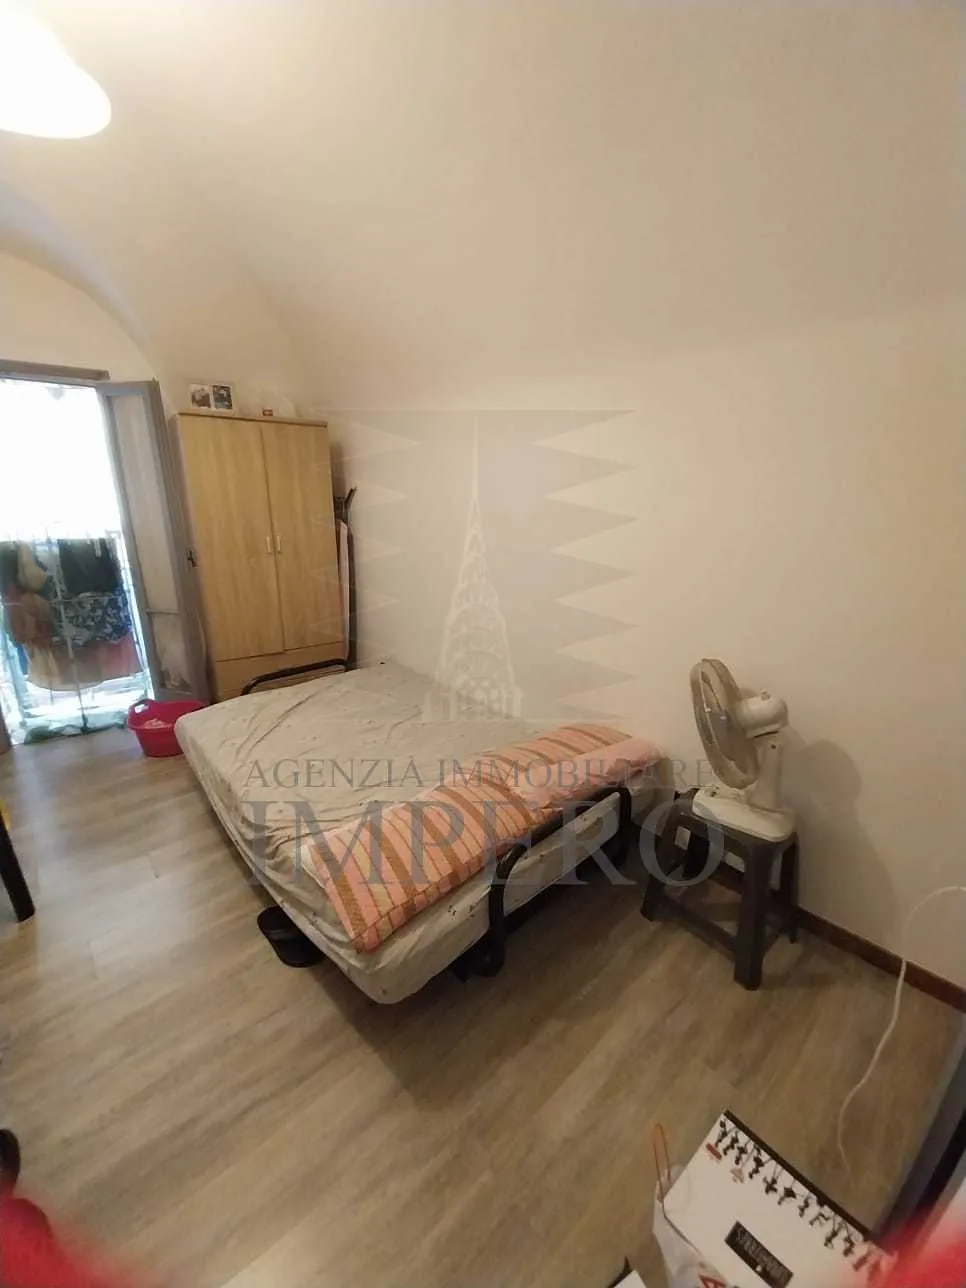 Immagine per Appartamento in vendita a Camporosso via Alessandro Volta 28